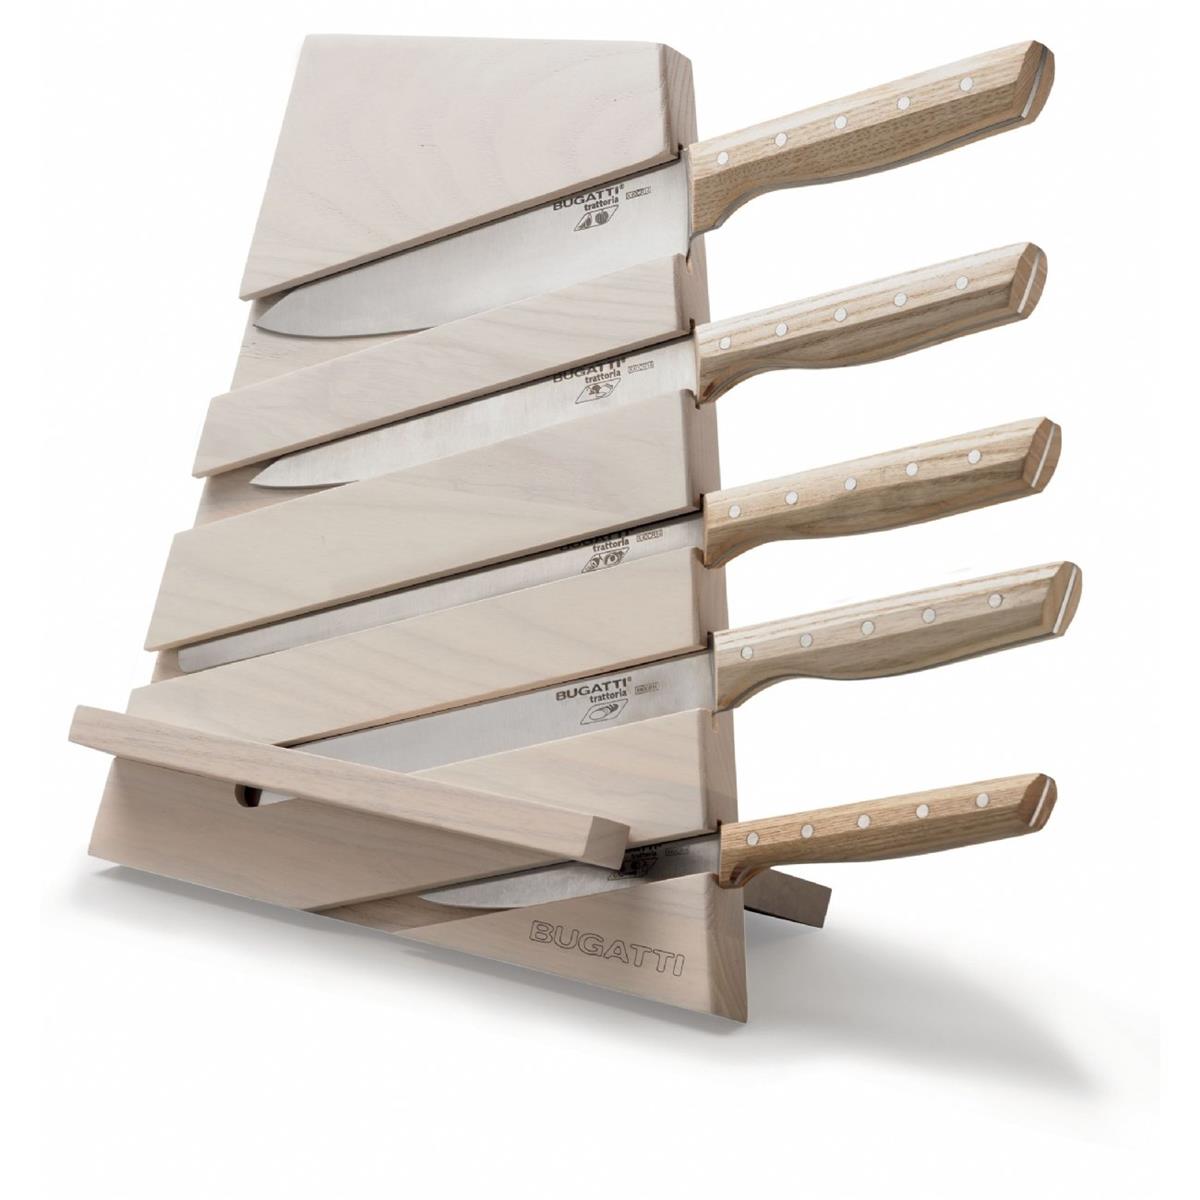 CEPPO TRATTORIA – Gebleichte Esche mit Schneidebrett und Rednerpult – 5 Messer mit Holzgriff